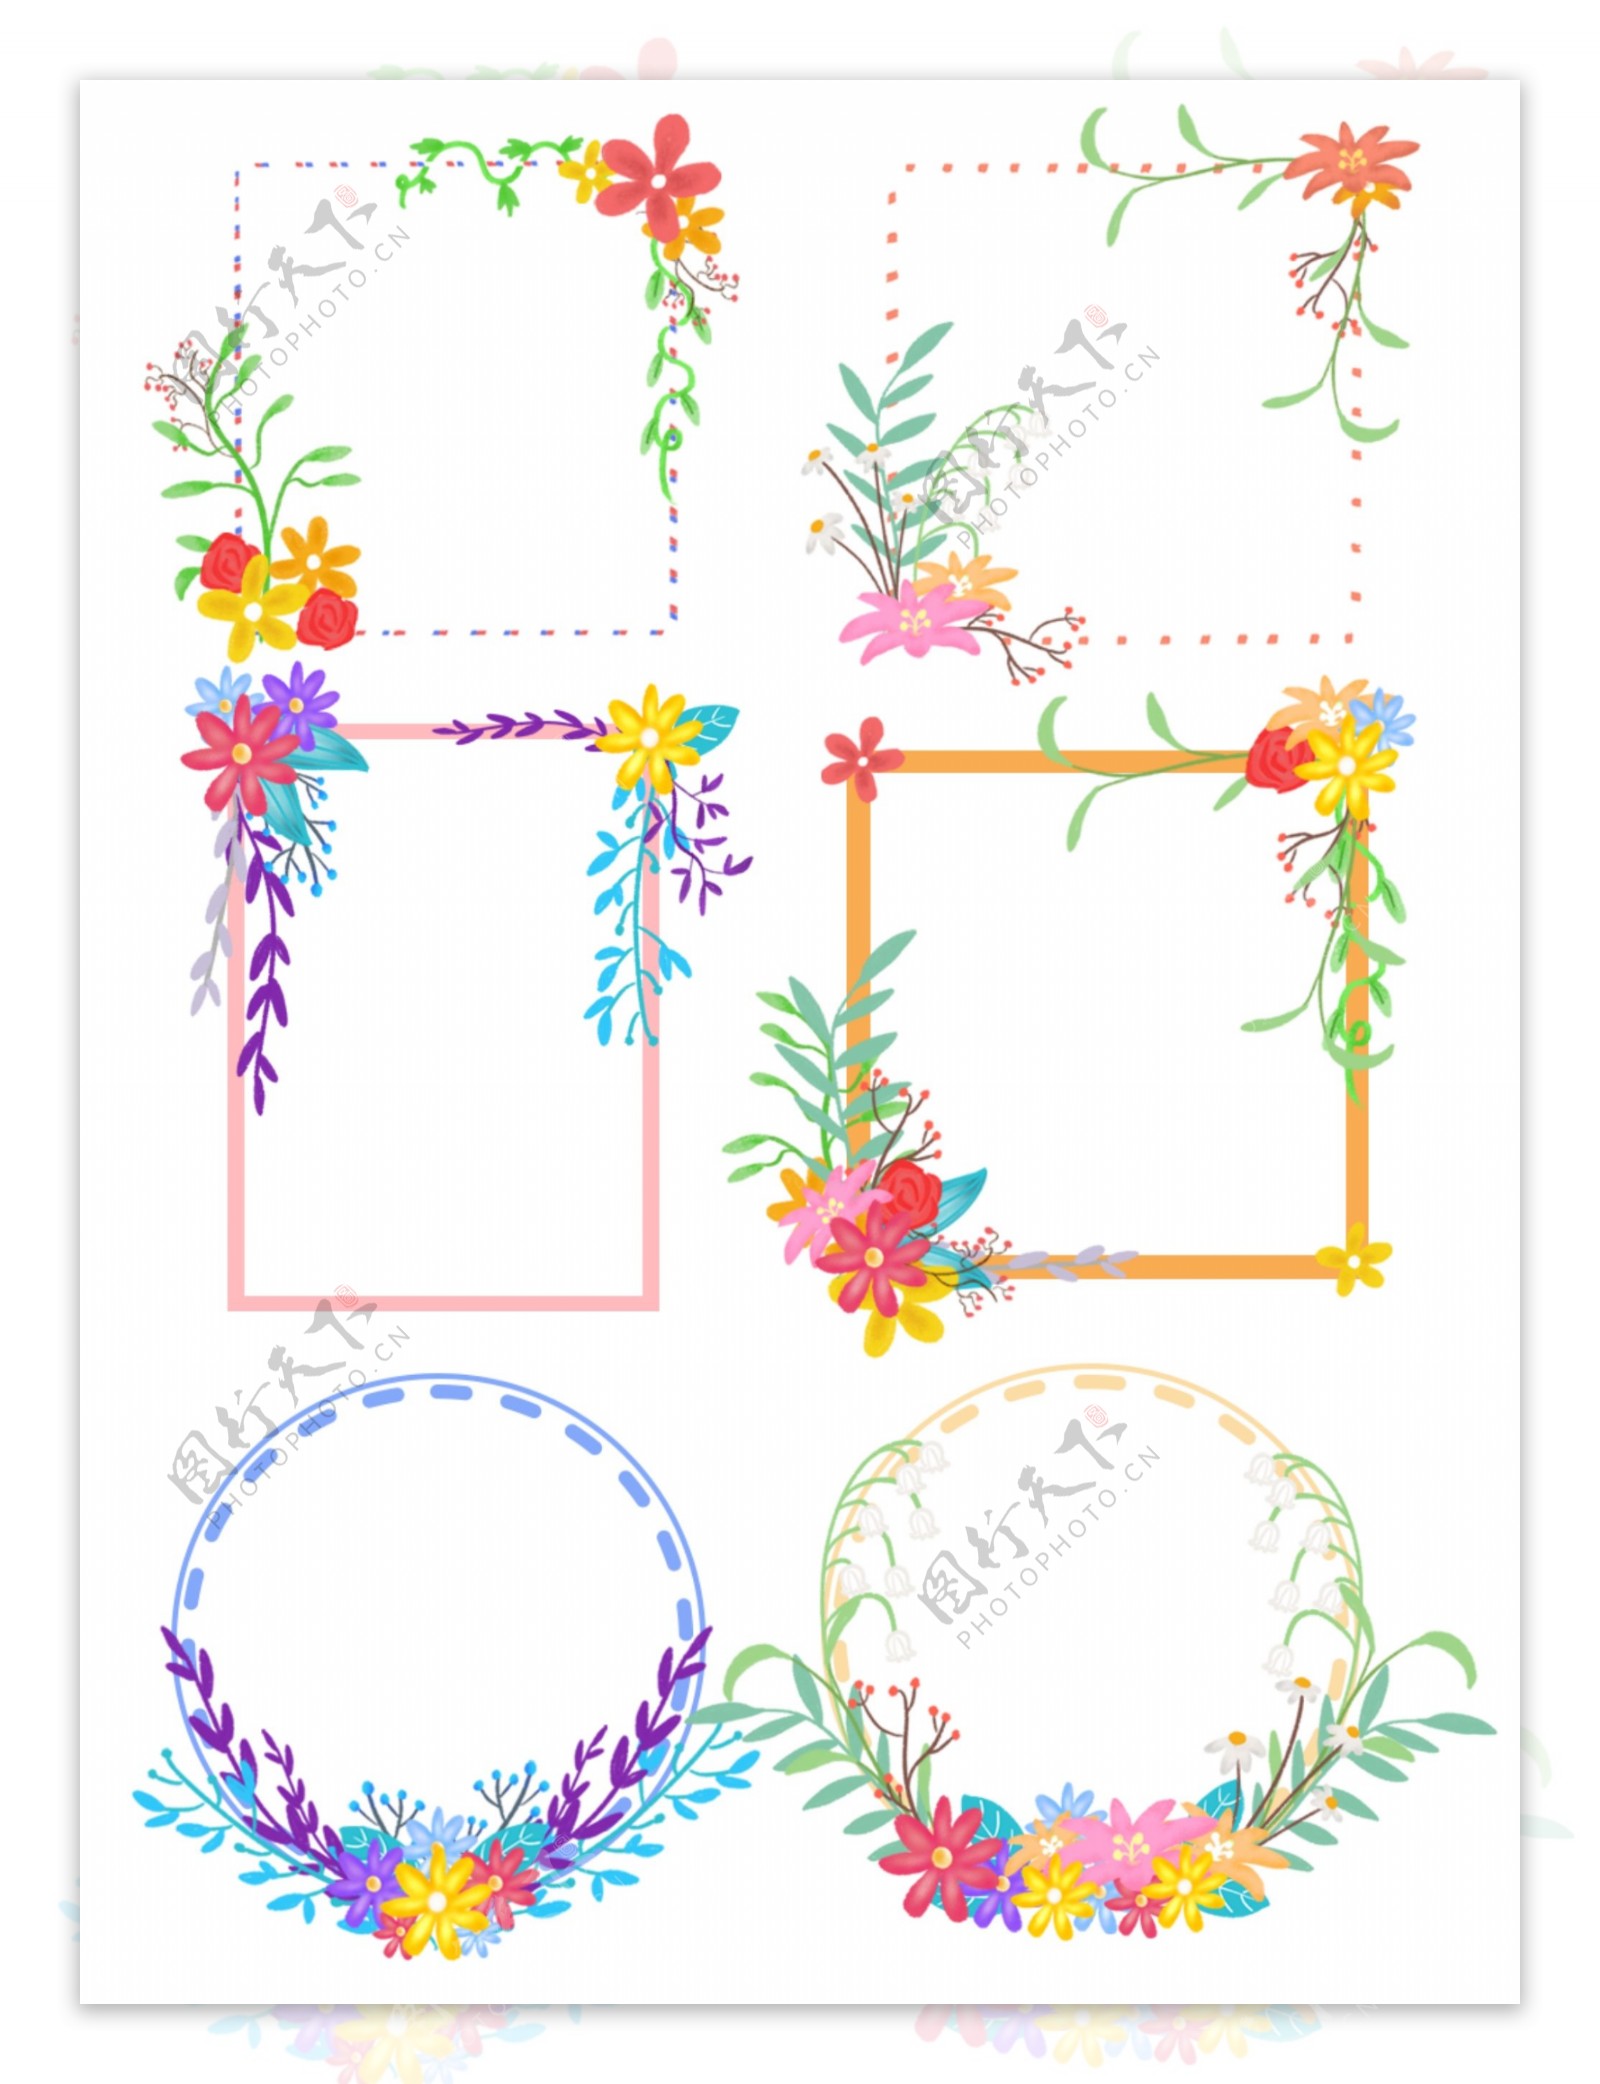 手绘花朵植物花卉绿植边框素材